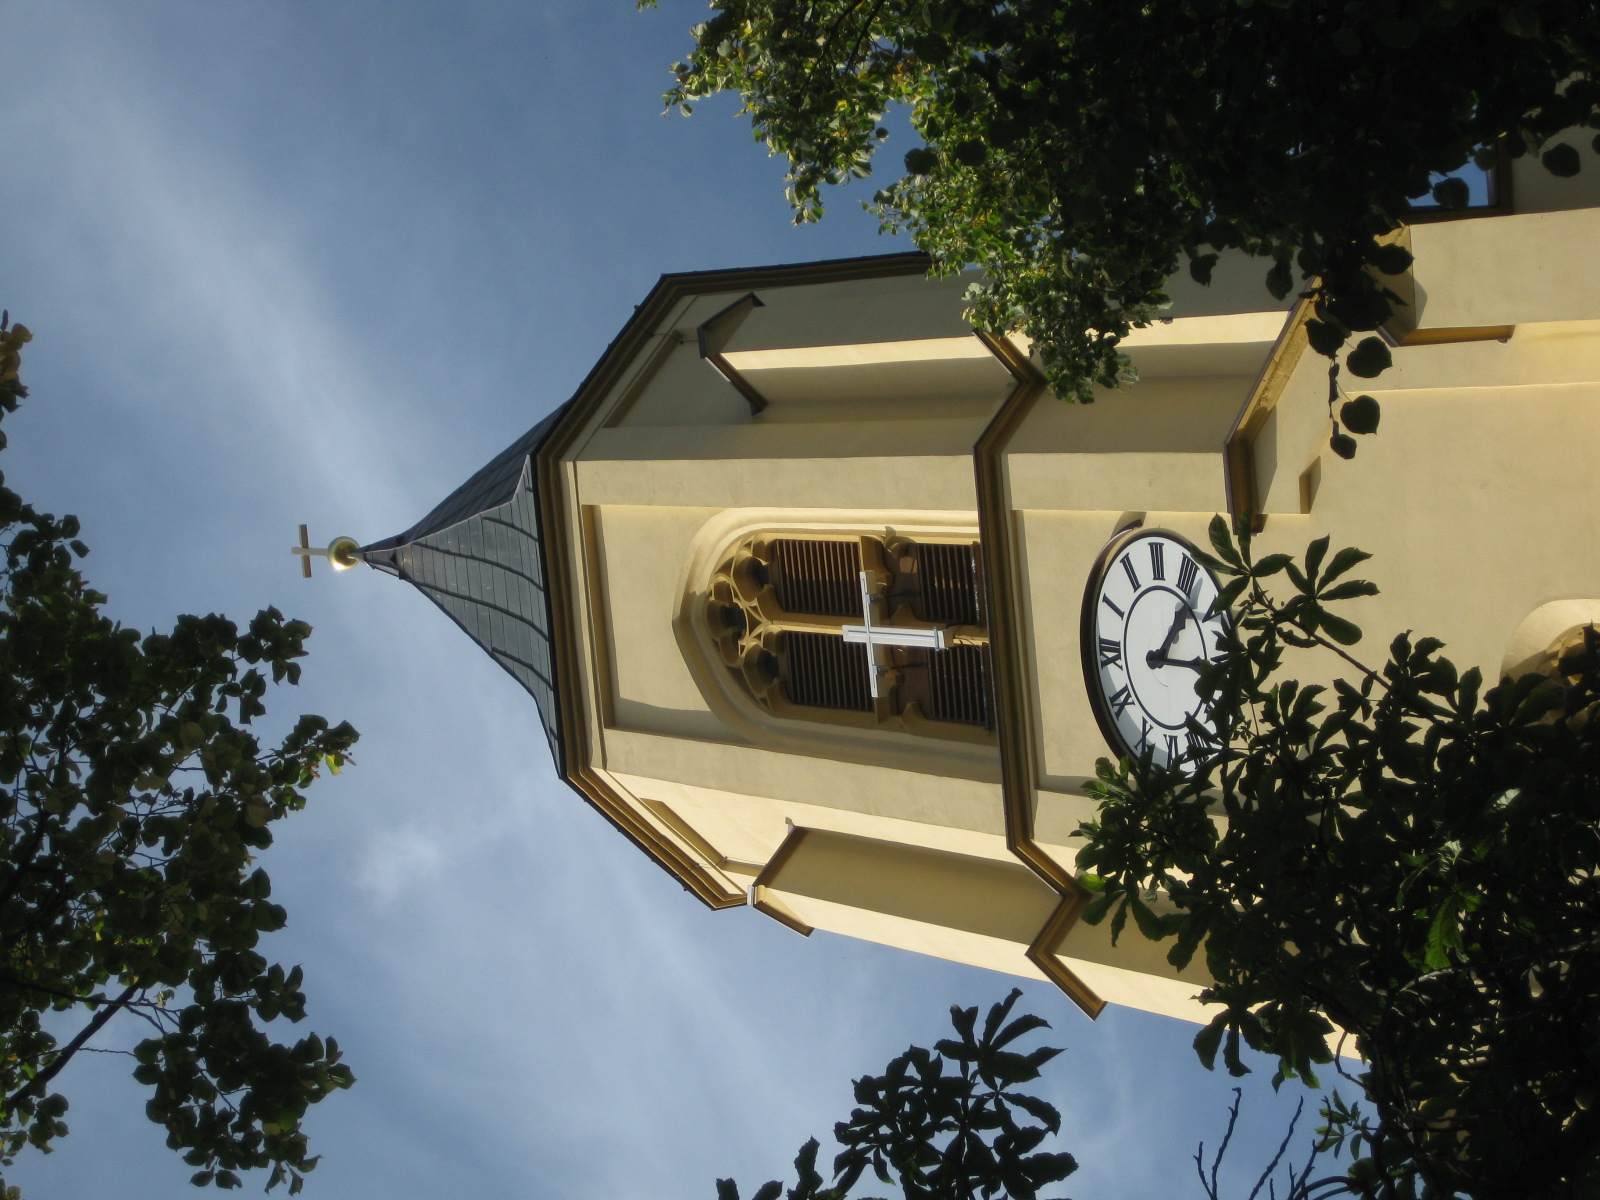 Kirchgemeinde am Fichtelberg